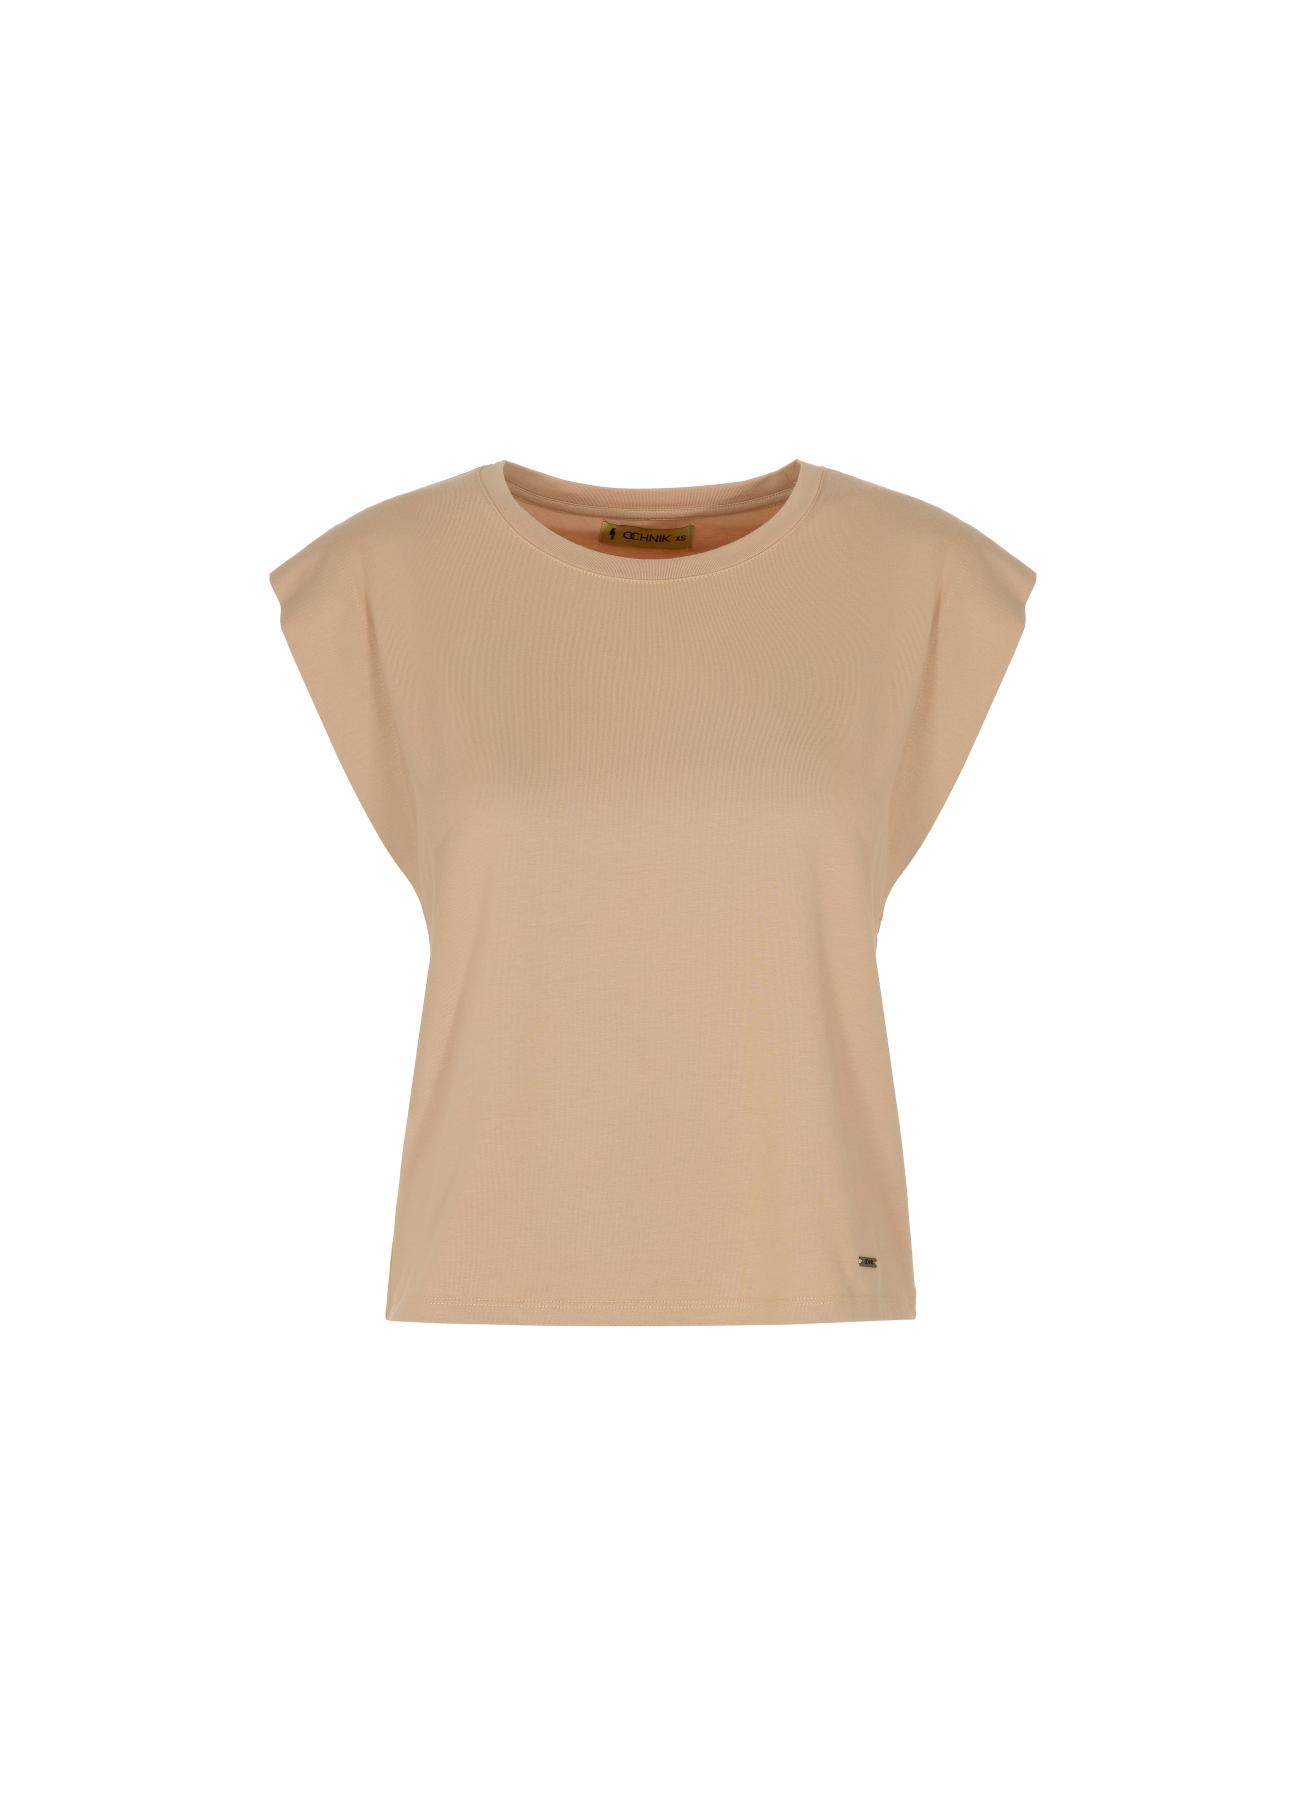 Beżowy T-shirt damski  basic TSHDT-0085-80(W22)